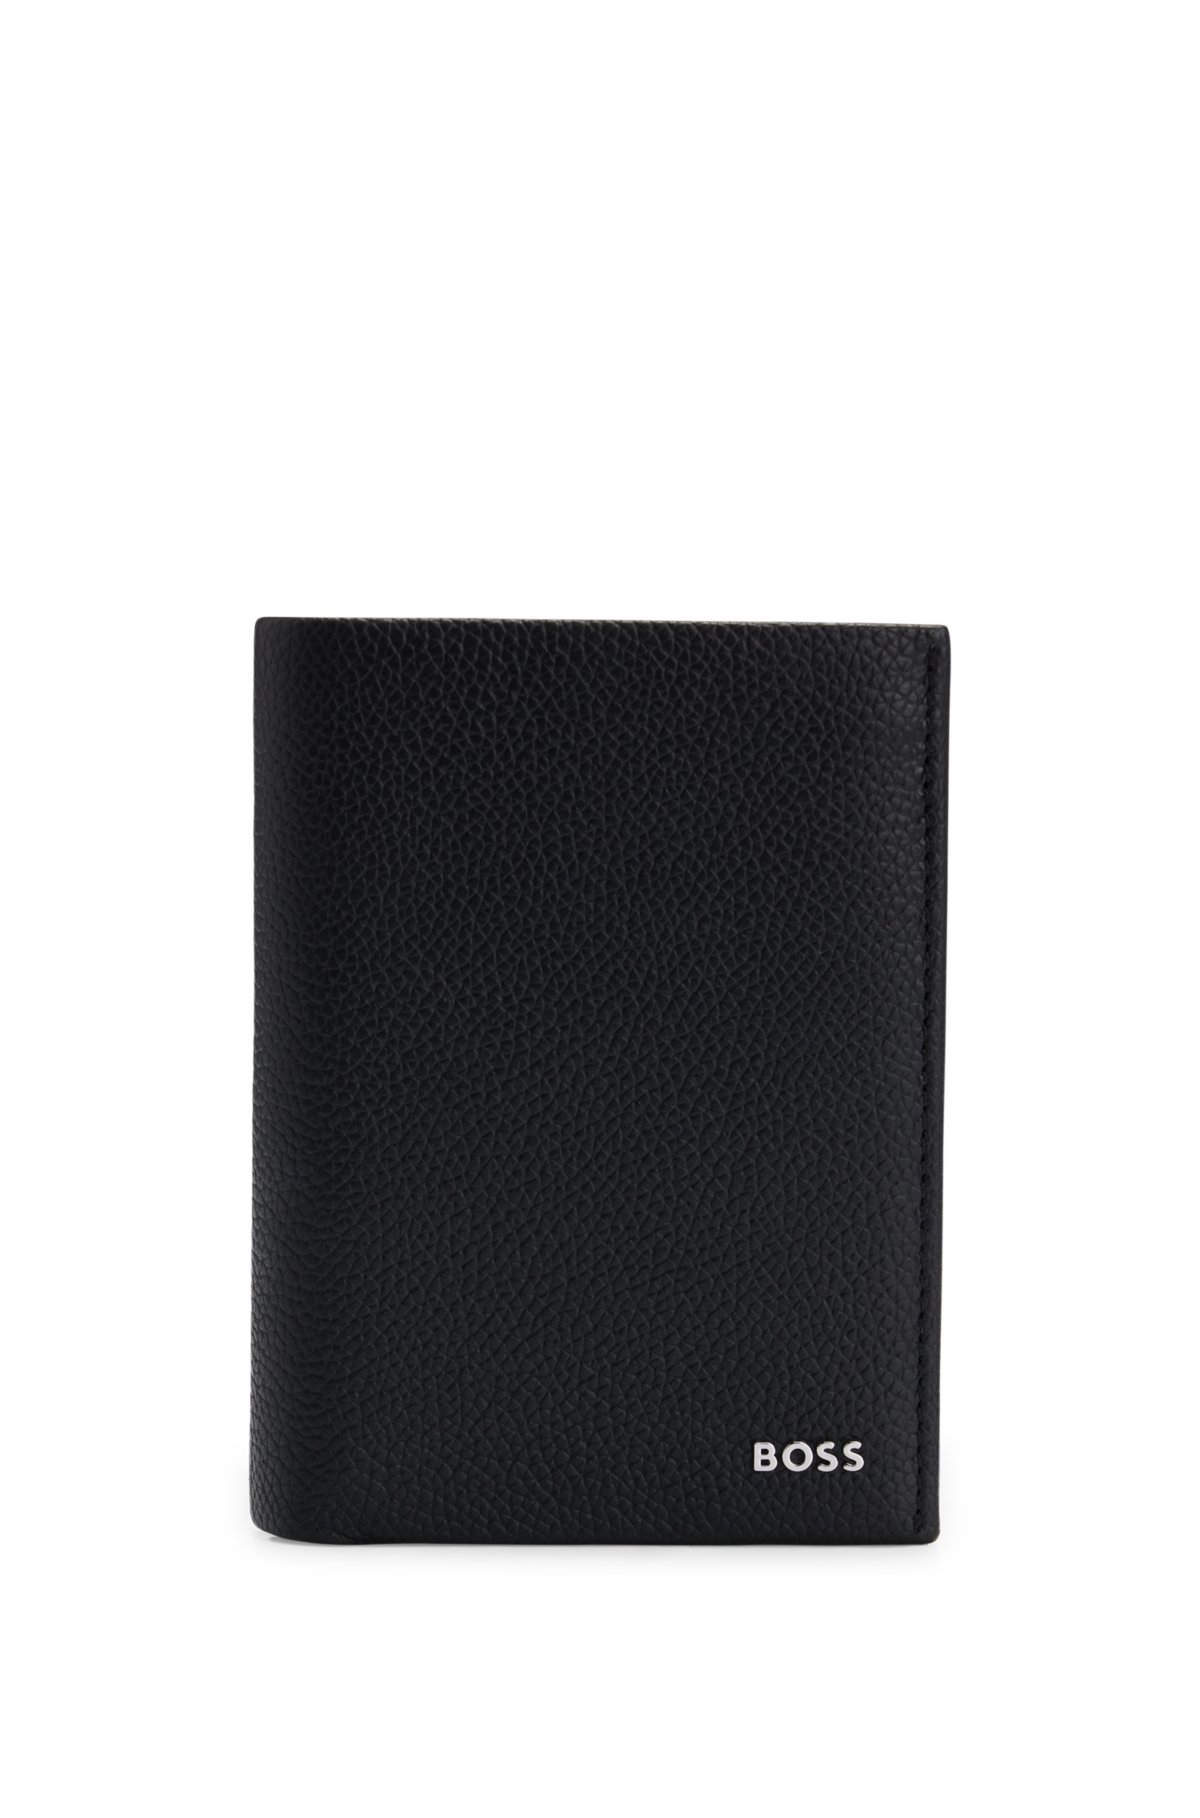 BOSS - グレインレザー カードホルダー ポリッシュシルバー レタリングロゴ